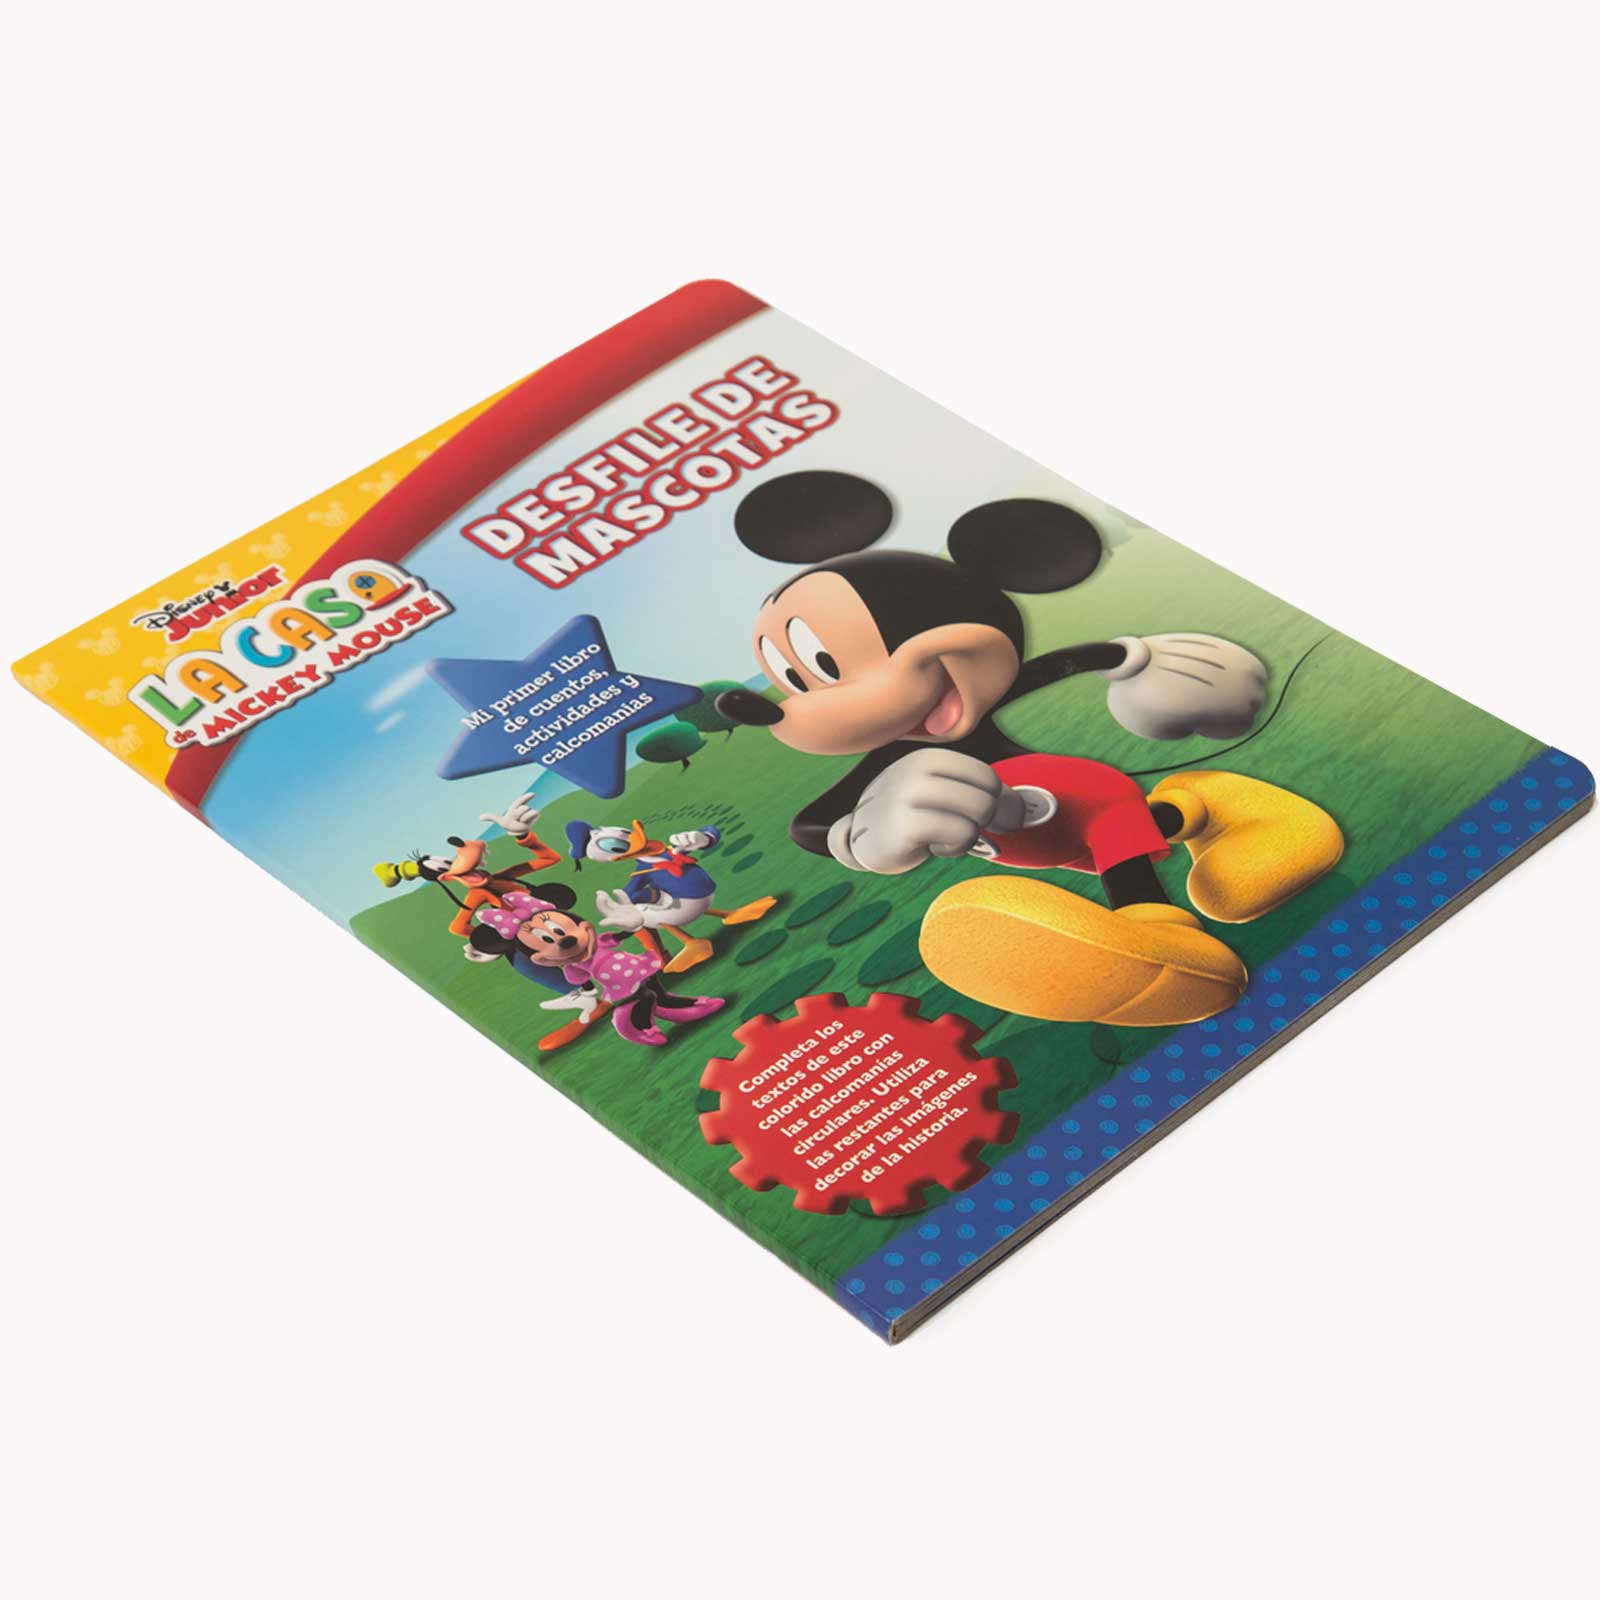 Libro La Casa De Mickey Mouse 1. Libro Educativo Con Actividades Y Pegatinas  De DISNEY - Buscalibre